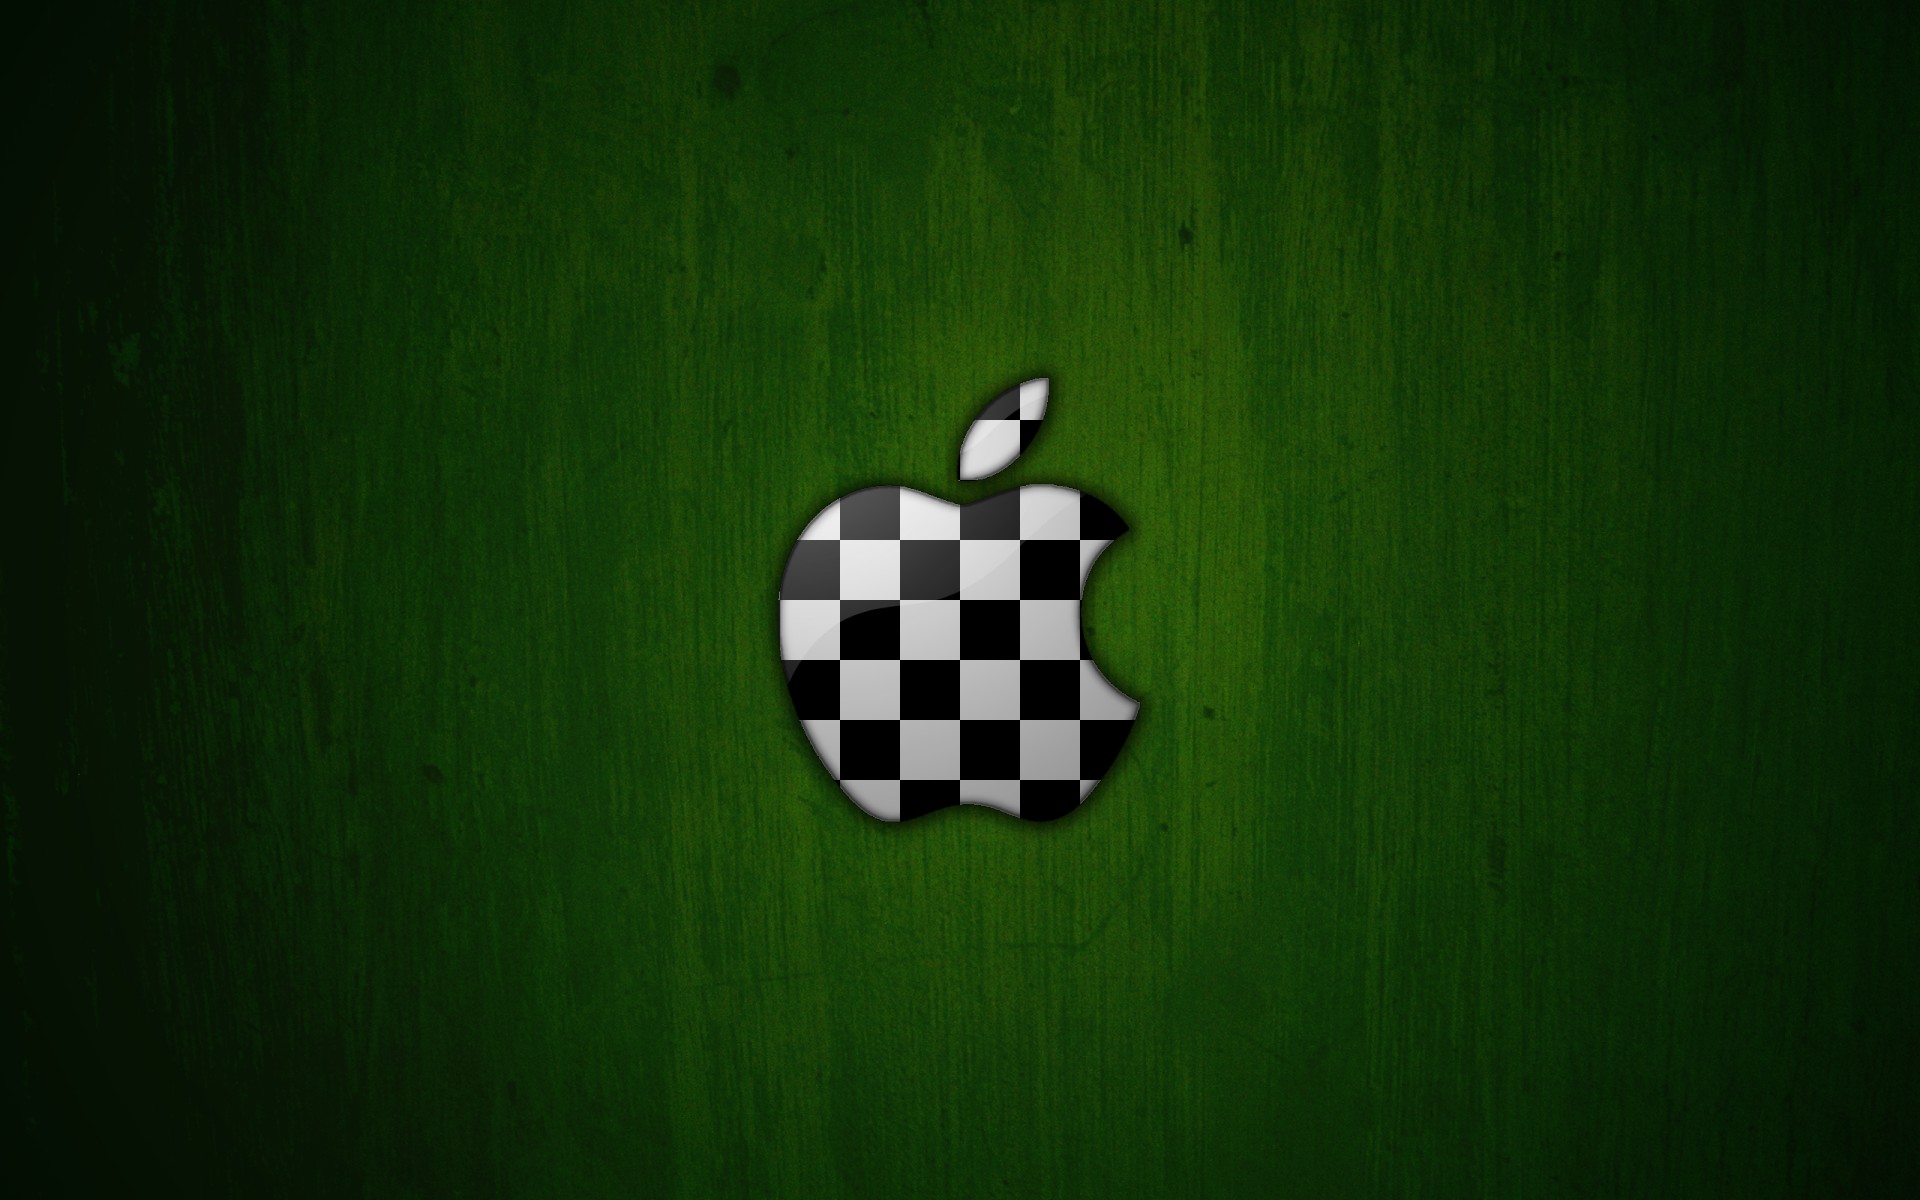 Green Chess Apple Desktop Wallpaper | Daily Pics Update | HD ...